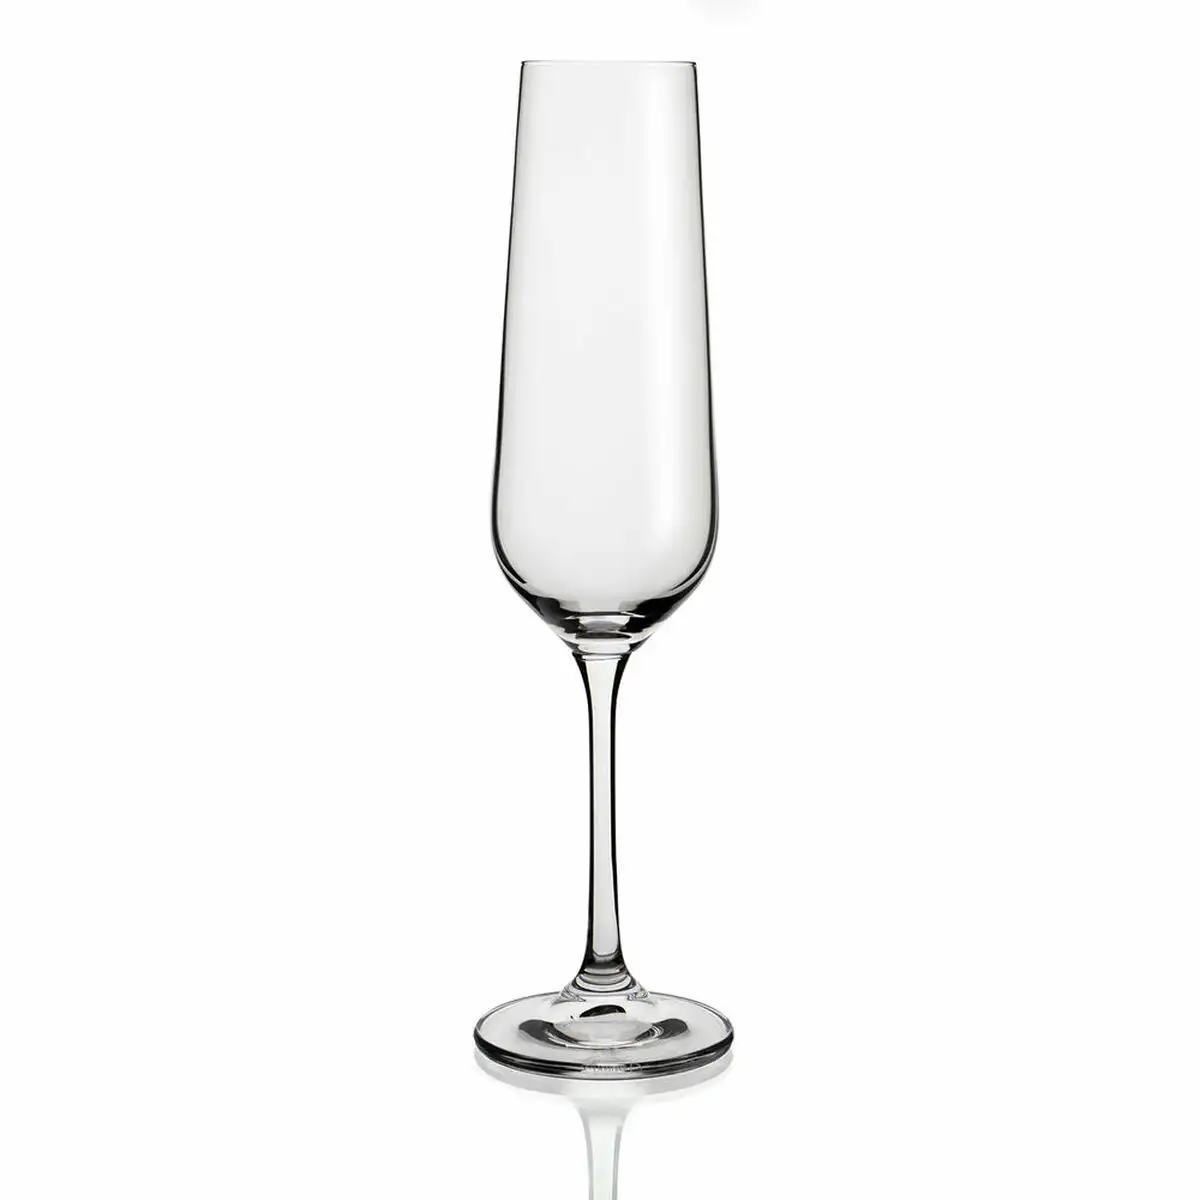 Coupe de champagne belia bohemia transparent verre 6 unites 20 cl _7209. Bienvenue chez DIAYTAR SENEGAL - Où le Shopping Rencontre la Qualité. Explorez notre sélection soigneusement conçue et trouvez des produits qui définissent le luxe abordable.